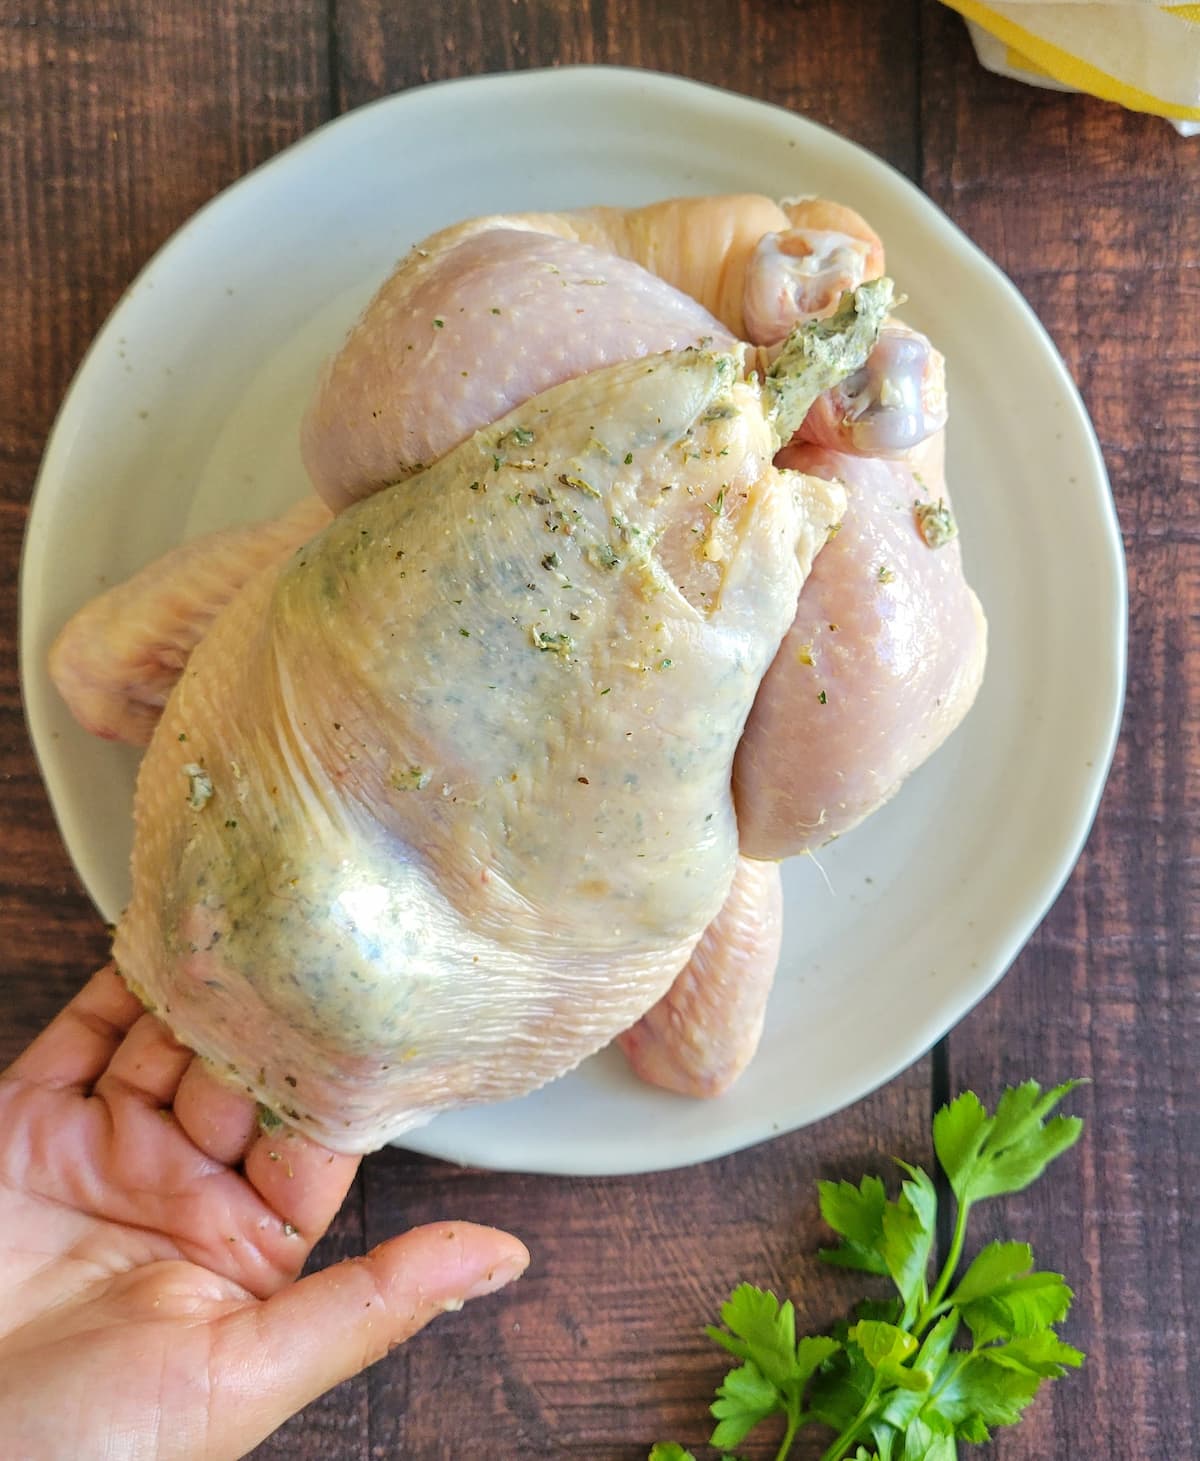 hands adding garlic butter underneath chicken skin on a raw whole chicken